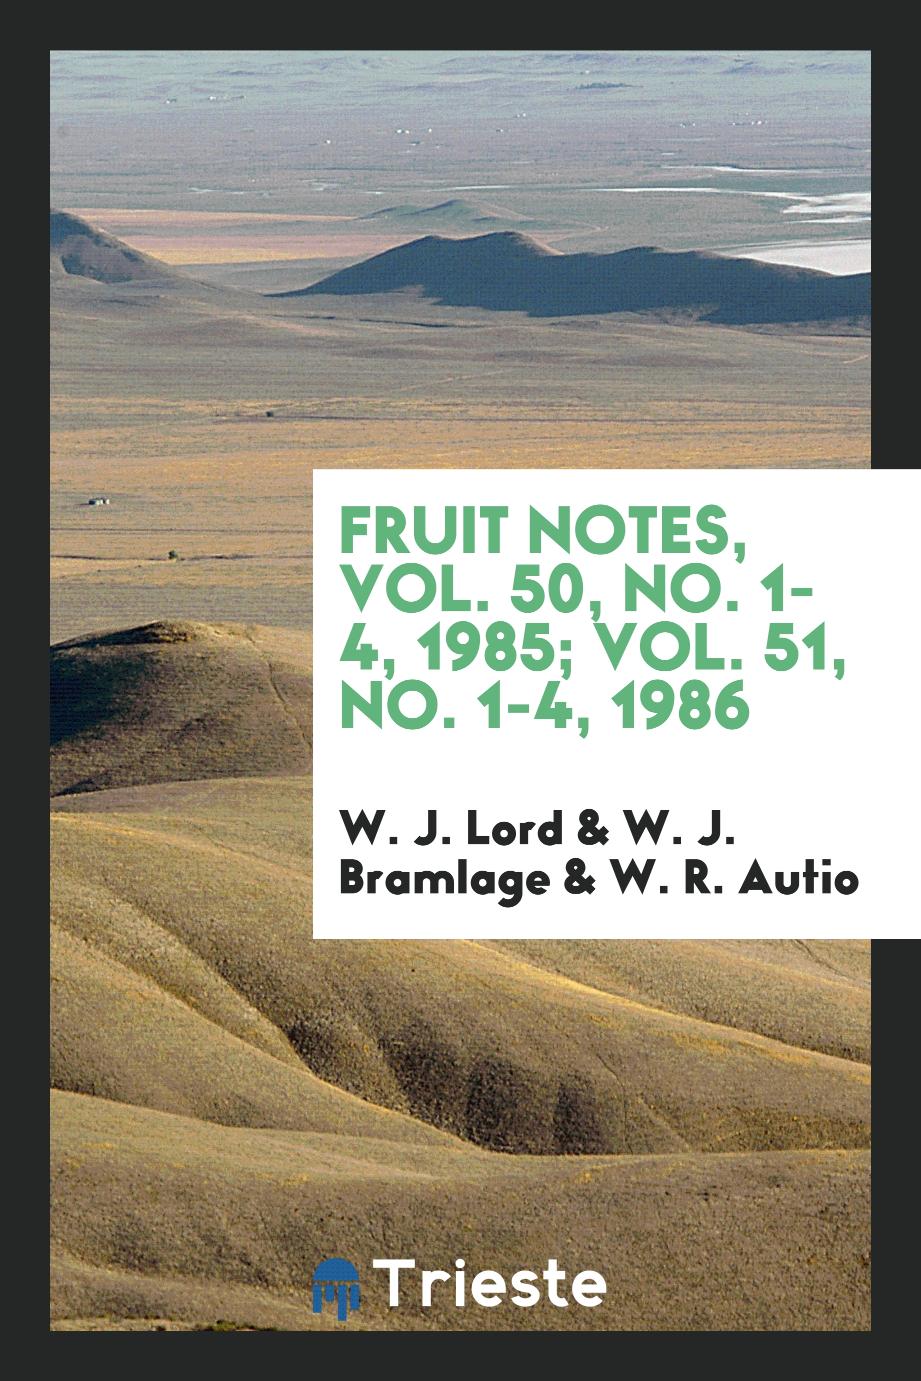 Fruit notes, Vol. 50, No. 1-4, 1985; Vol. 51, No. 1-4, 1986